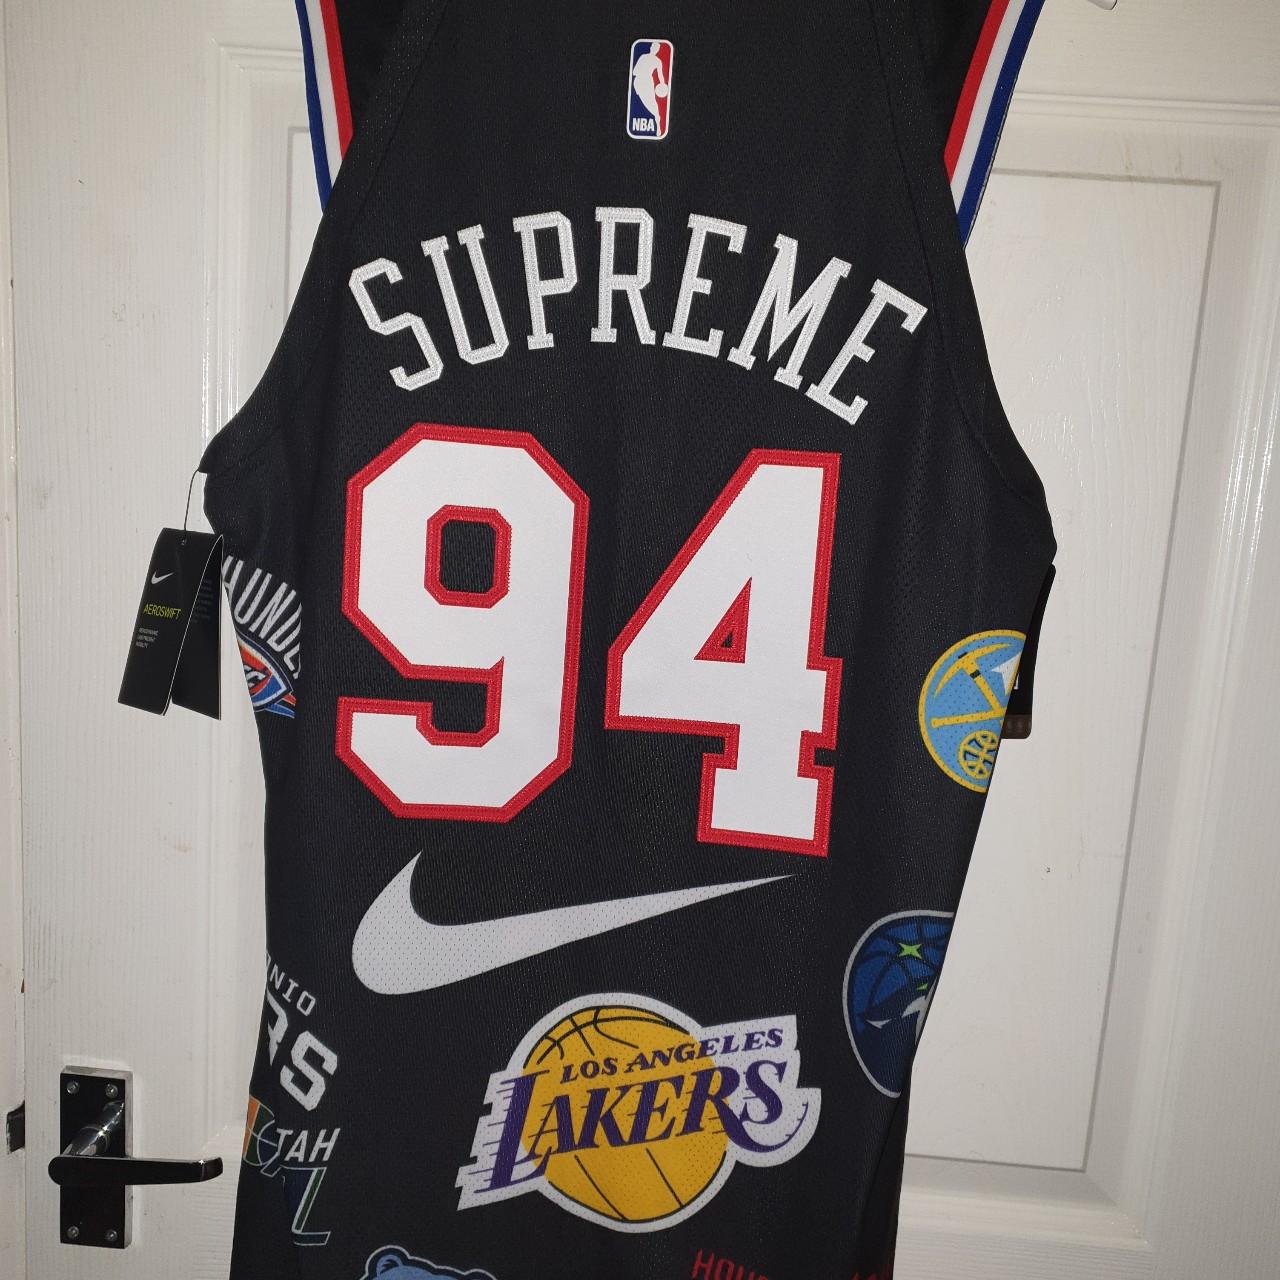 Supreme x Nike x NBA teams - Nike Jersey Black Size: - Depop